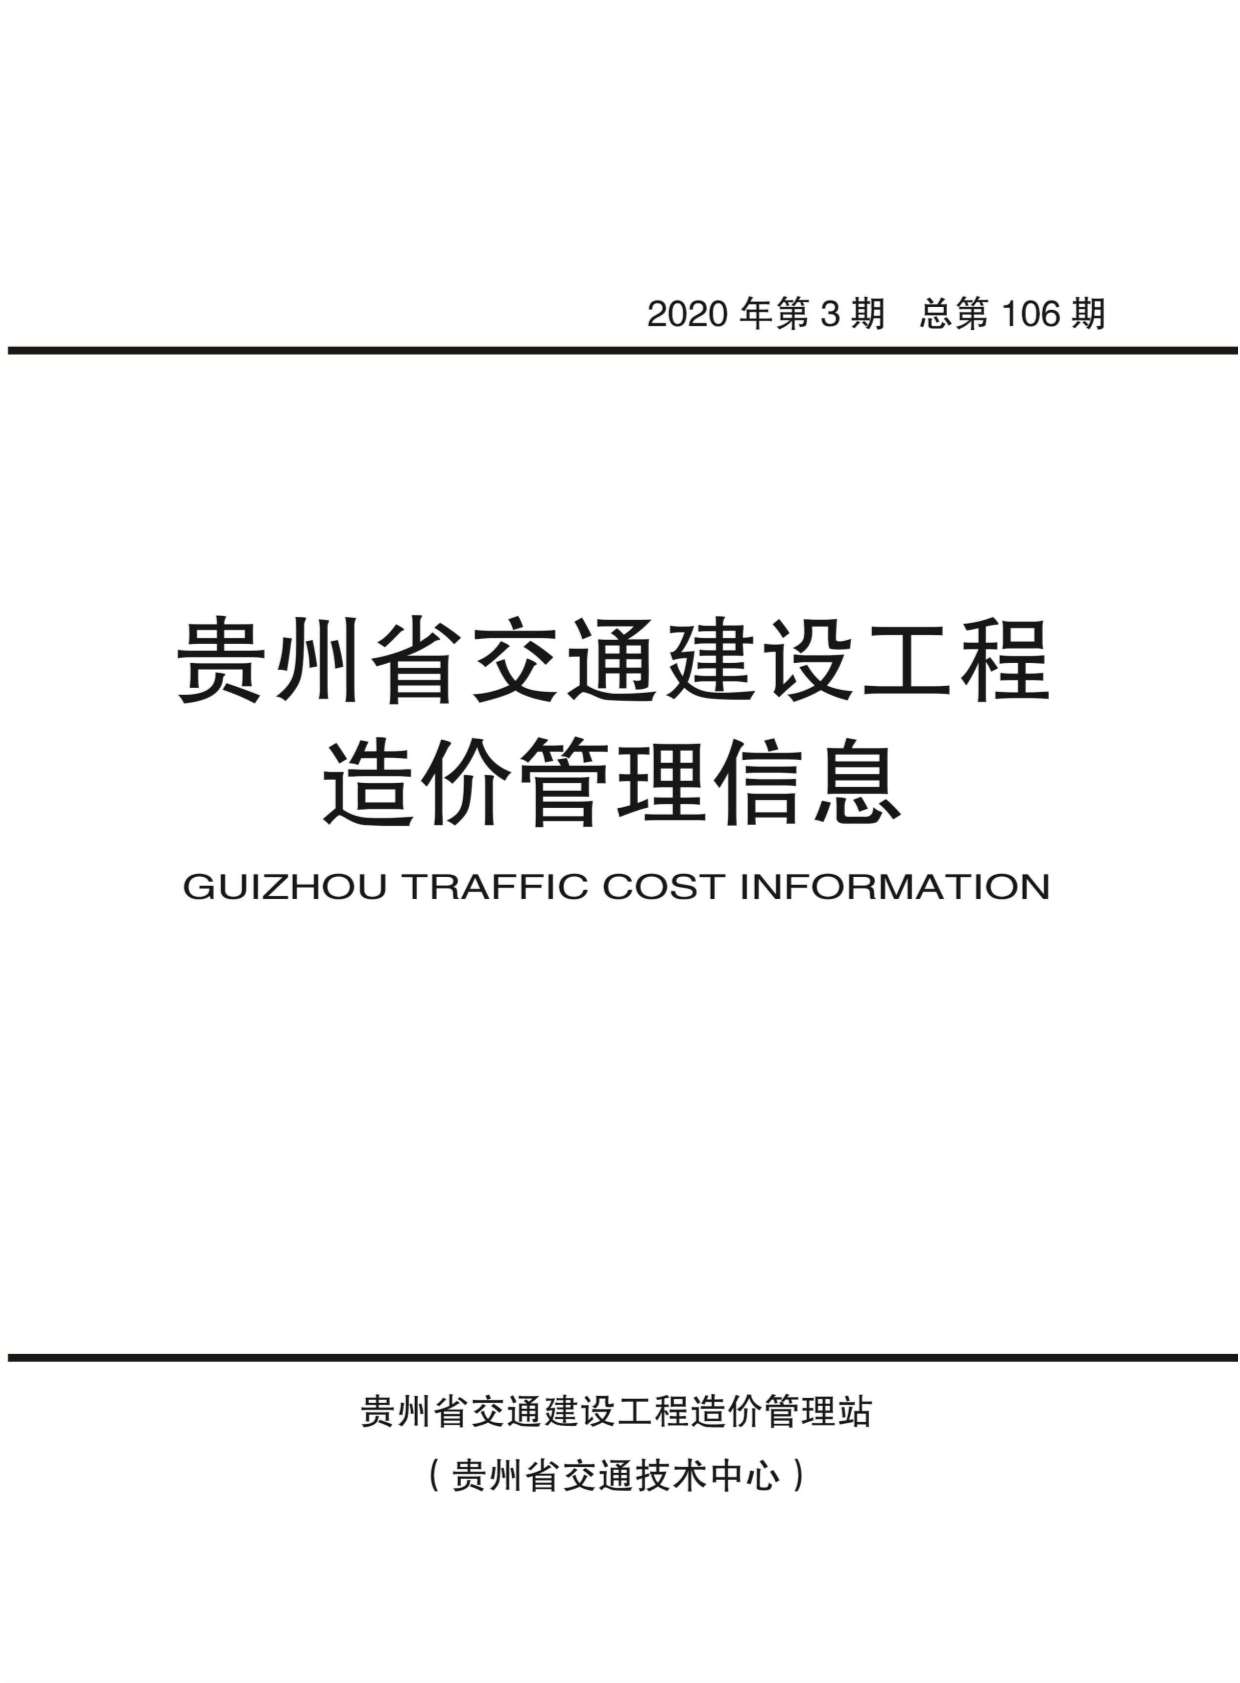 贵州省2020年3月造价库信息造价库信息网